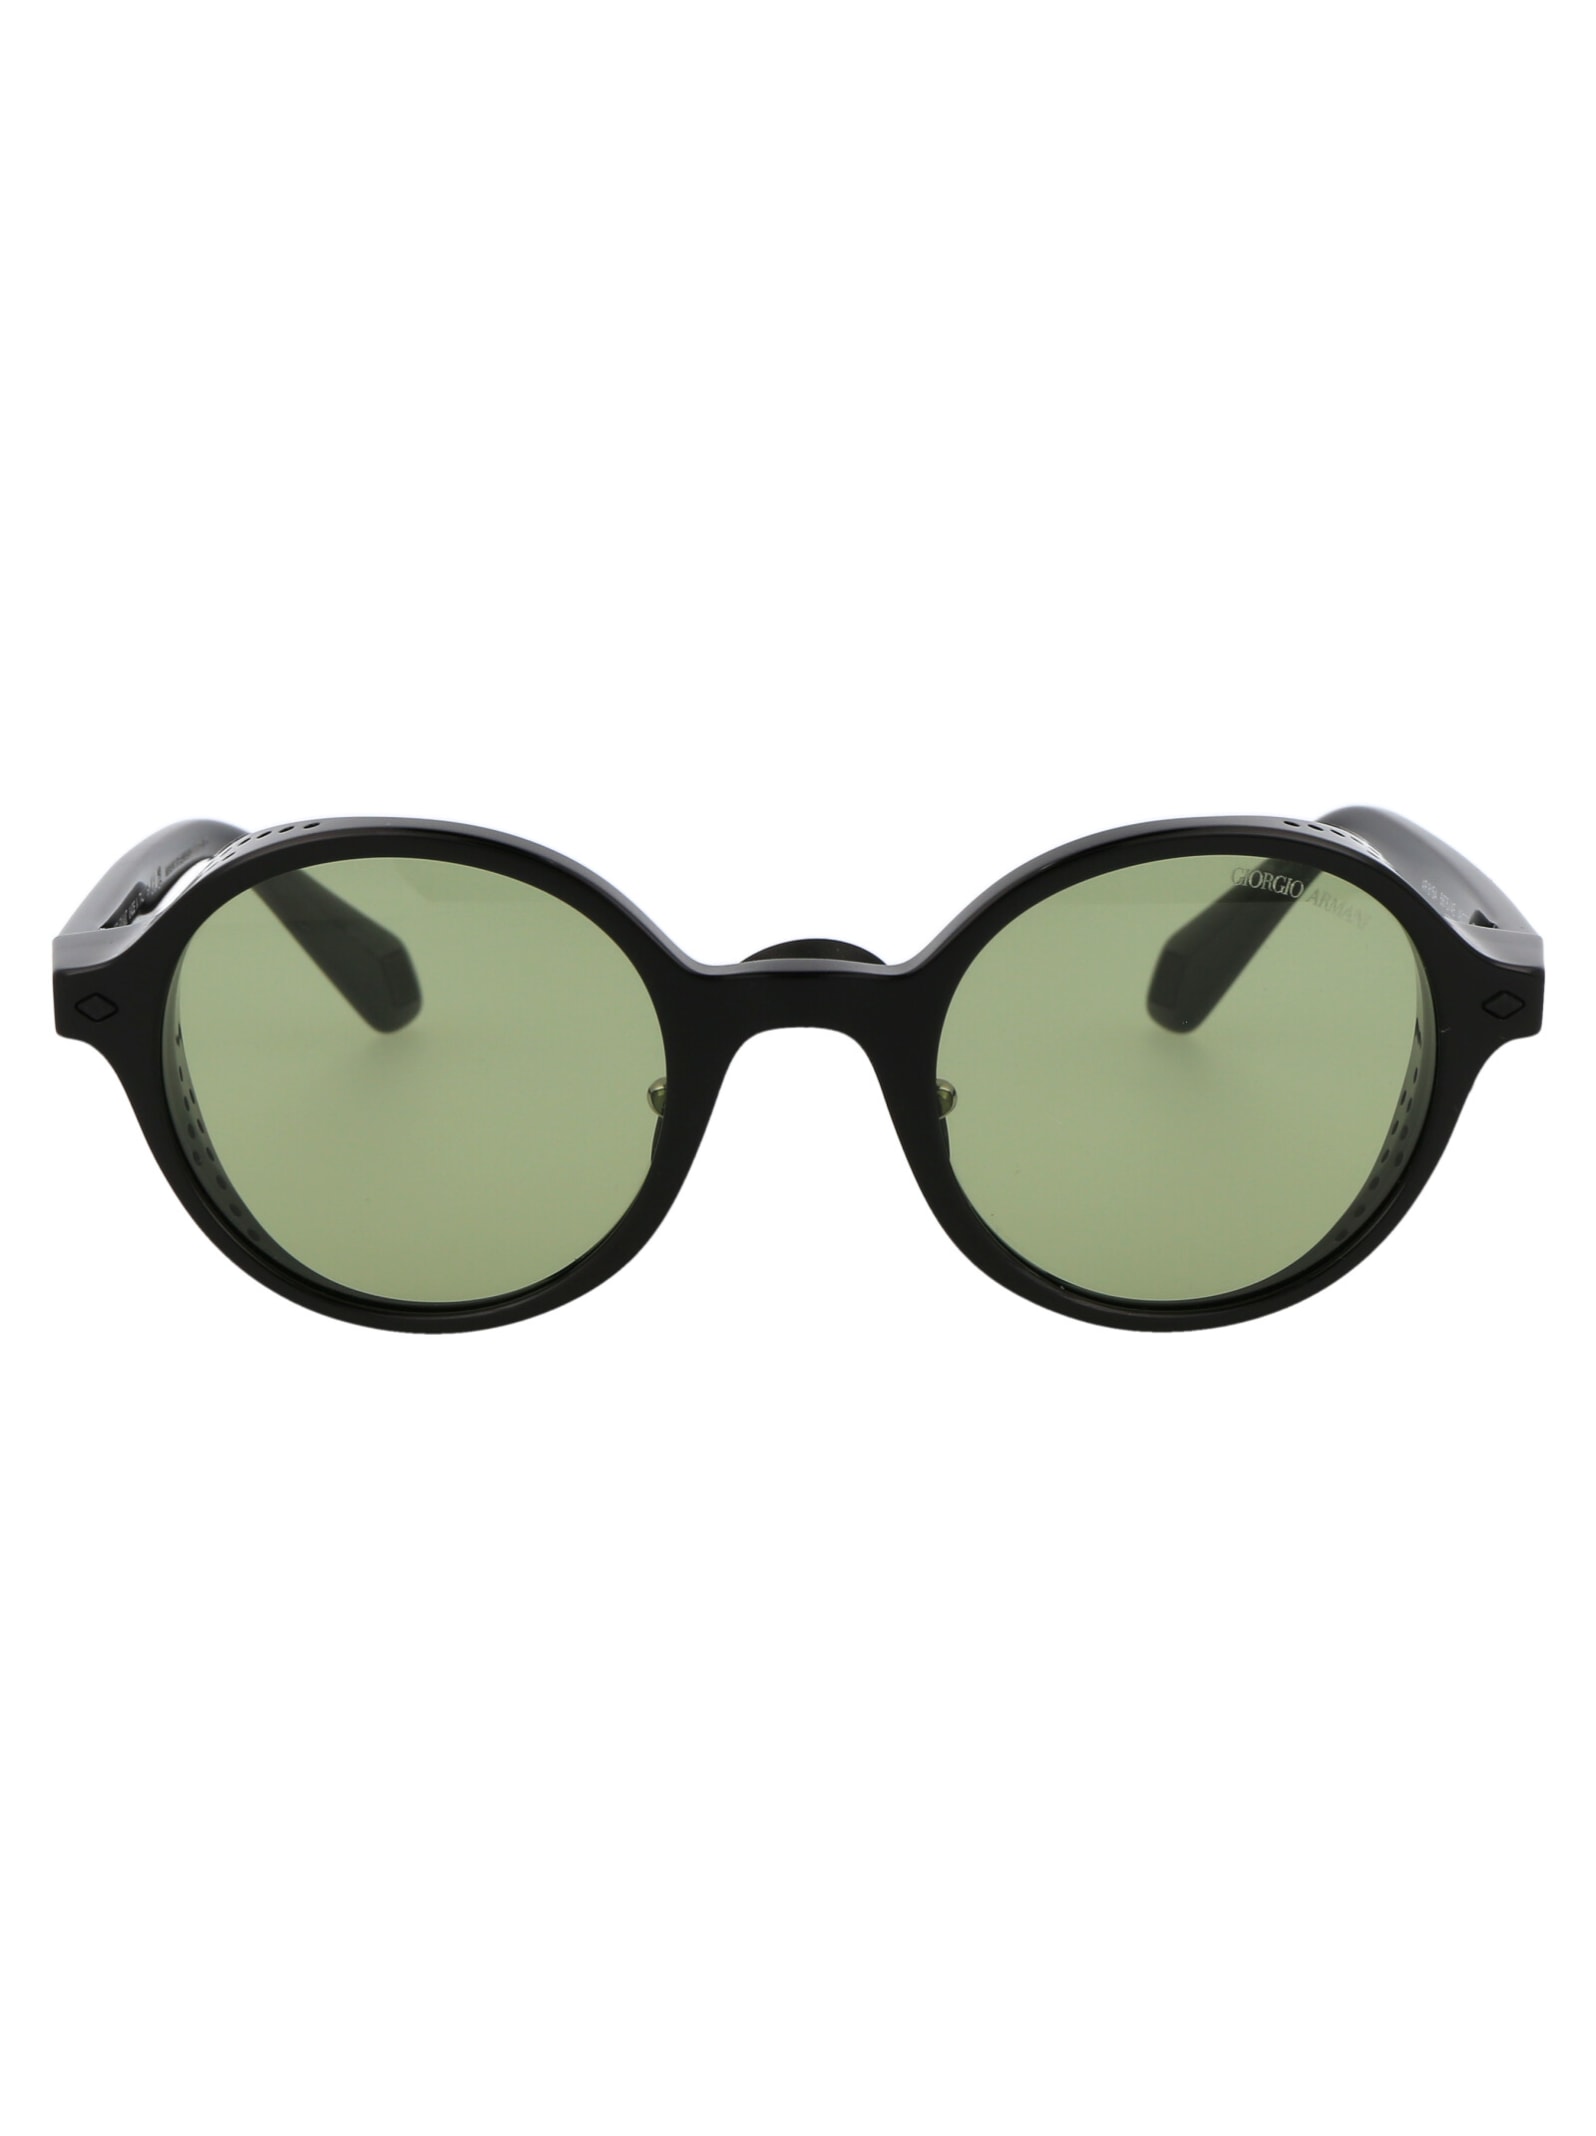 Giorgio Armani 0ar8154 Sunglasses